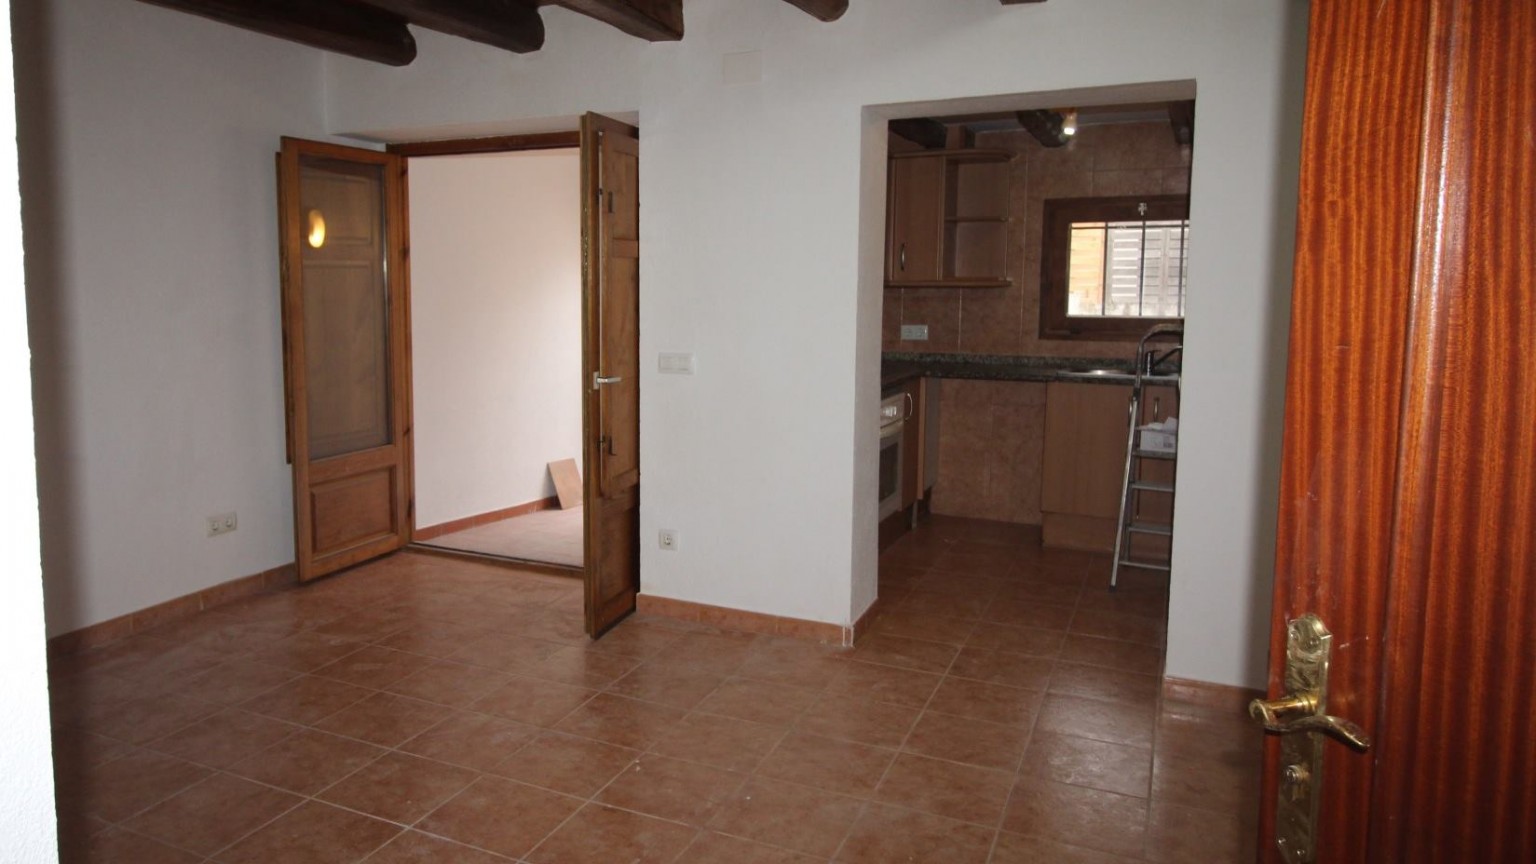 Piso en venta de 2 habitaciones, en el municipio de Lladó.